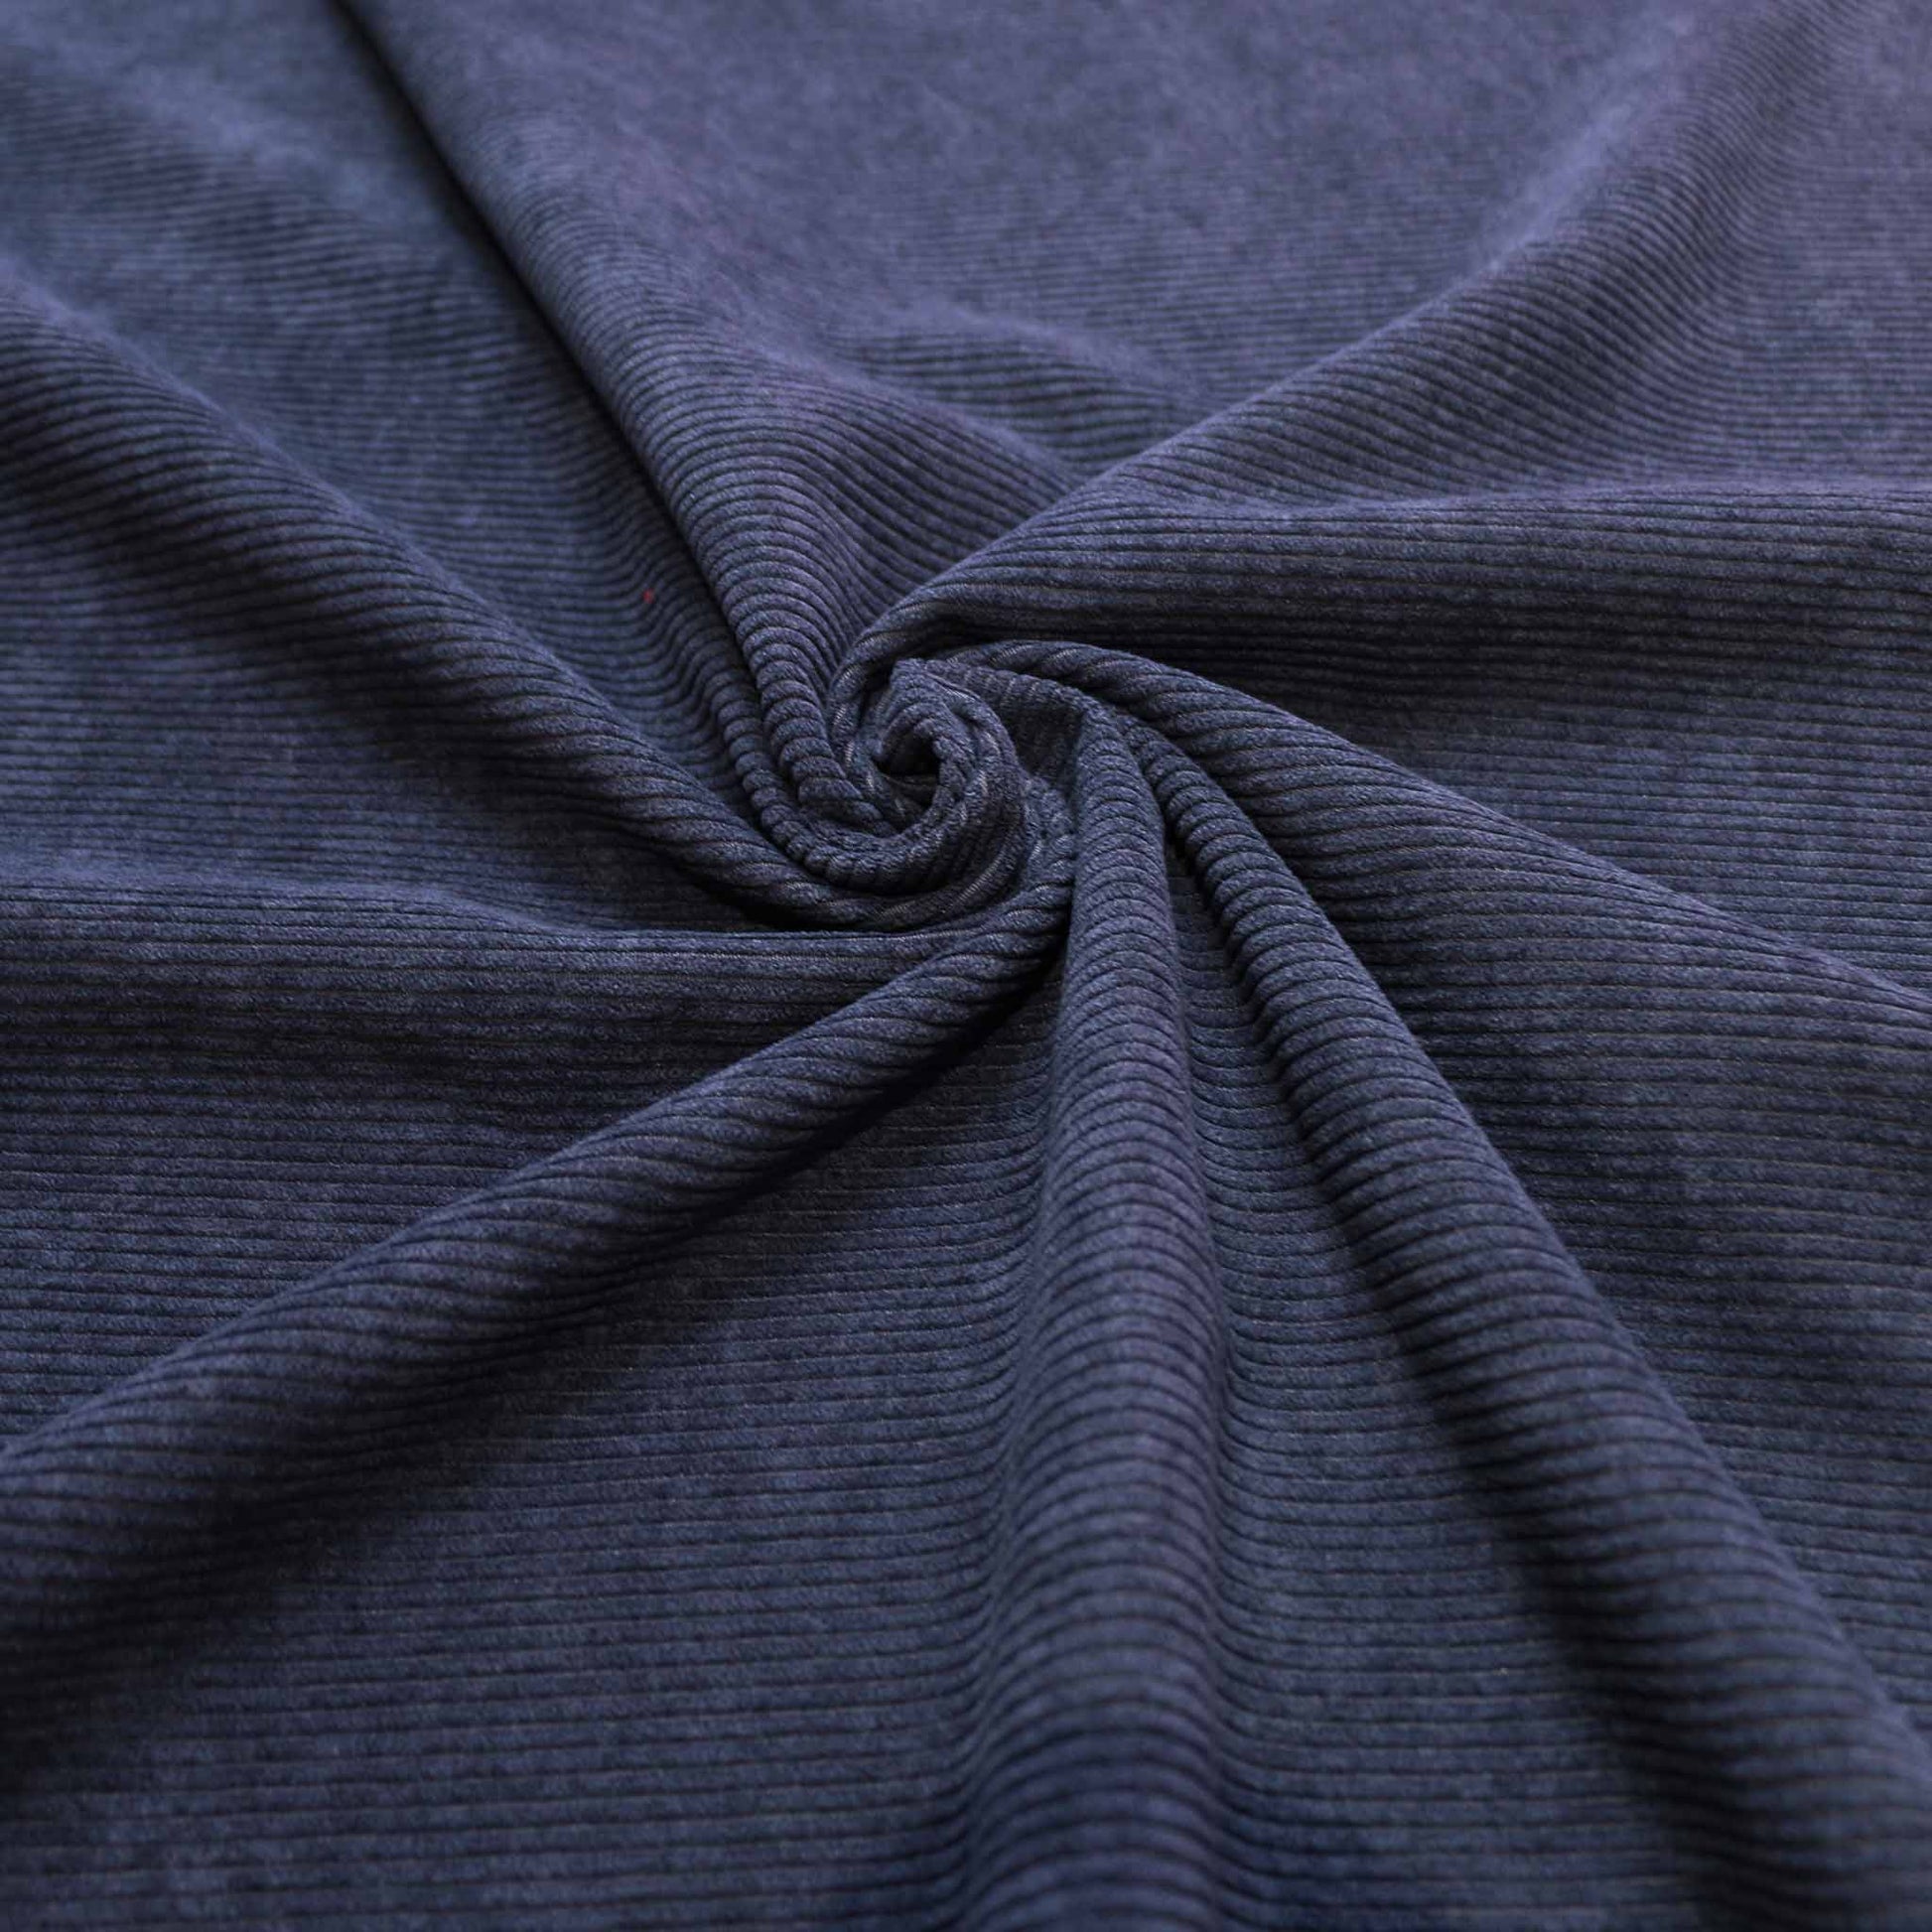 jumbo corduroy velvet dressmaking fabric in navy blue